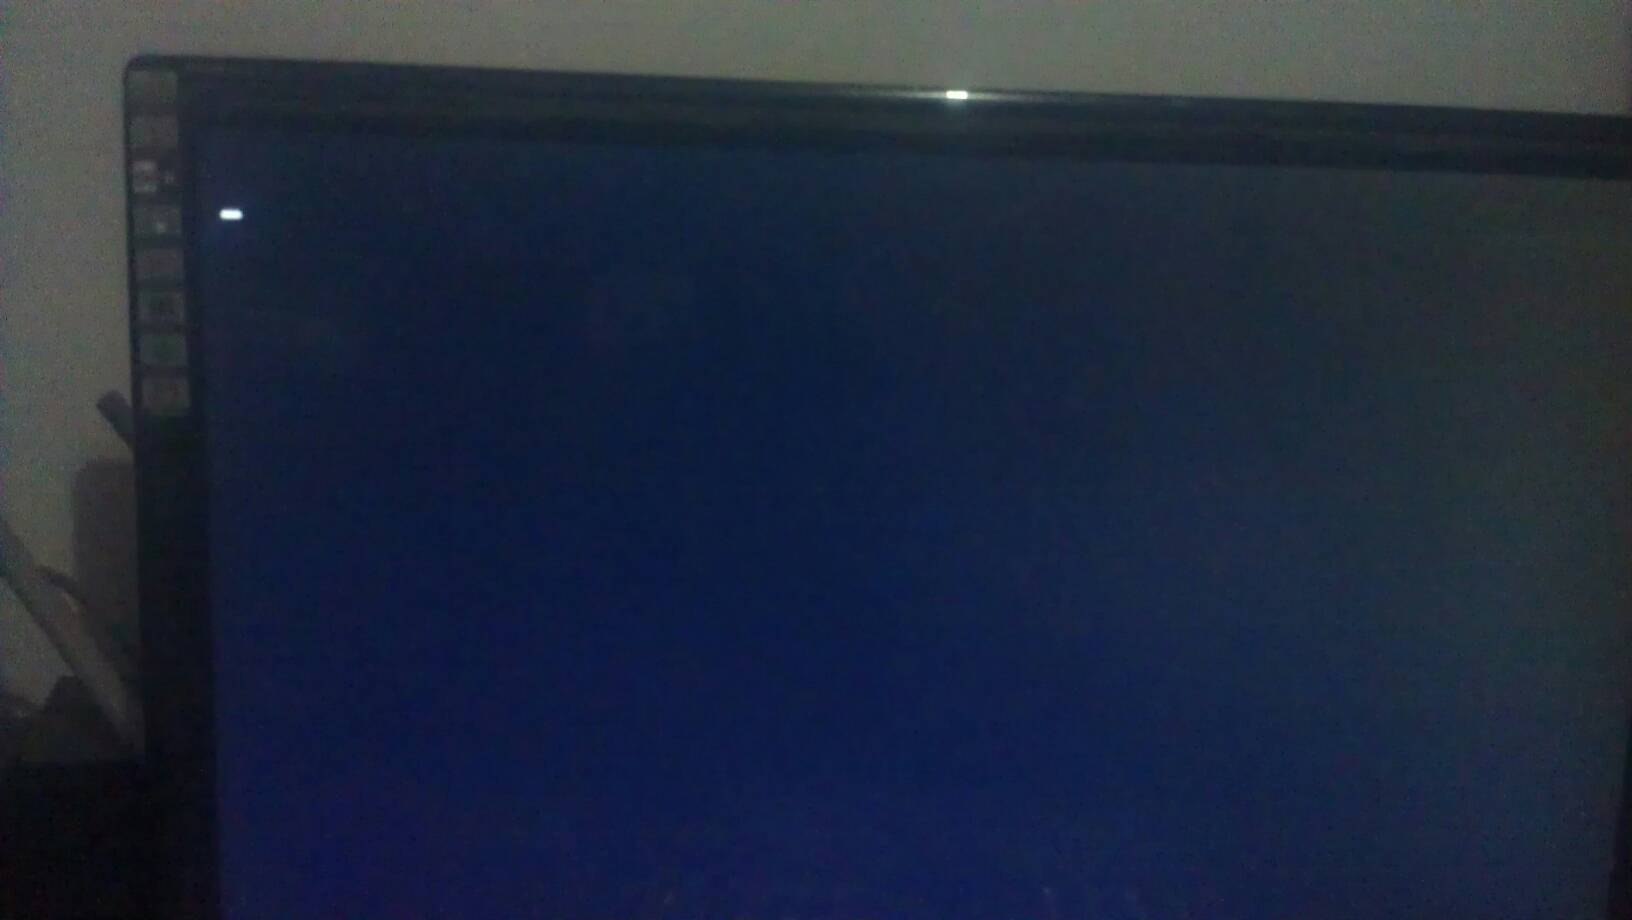 电脑开机后显示器黑屏，显示器下面的蓝灯一直亮着，下面只有绿灯亮（一直亮）红灯不亮